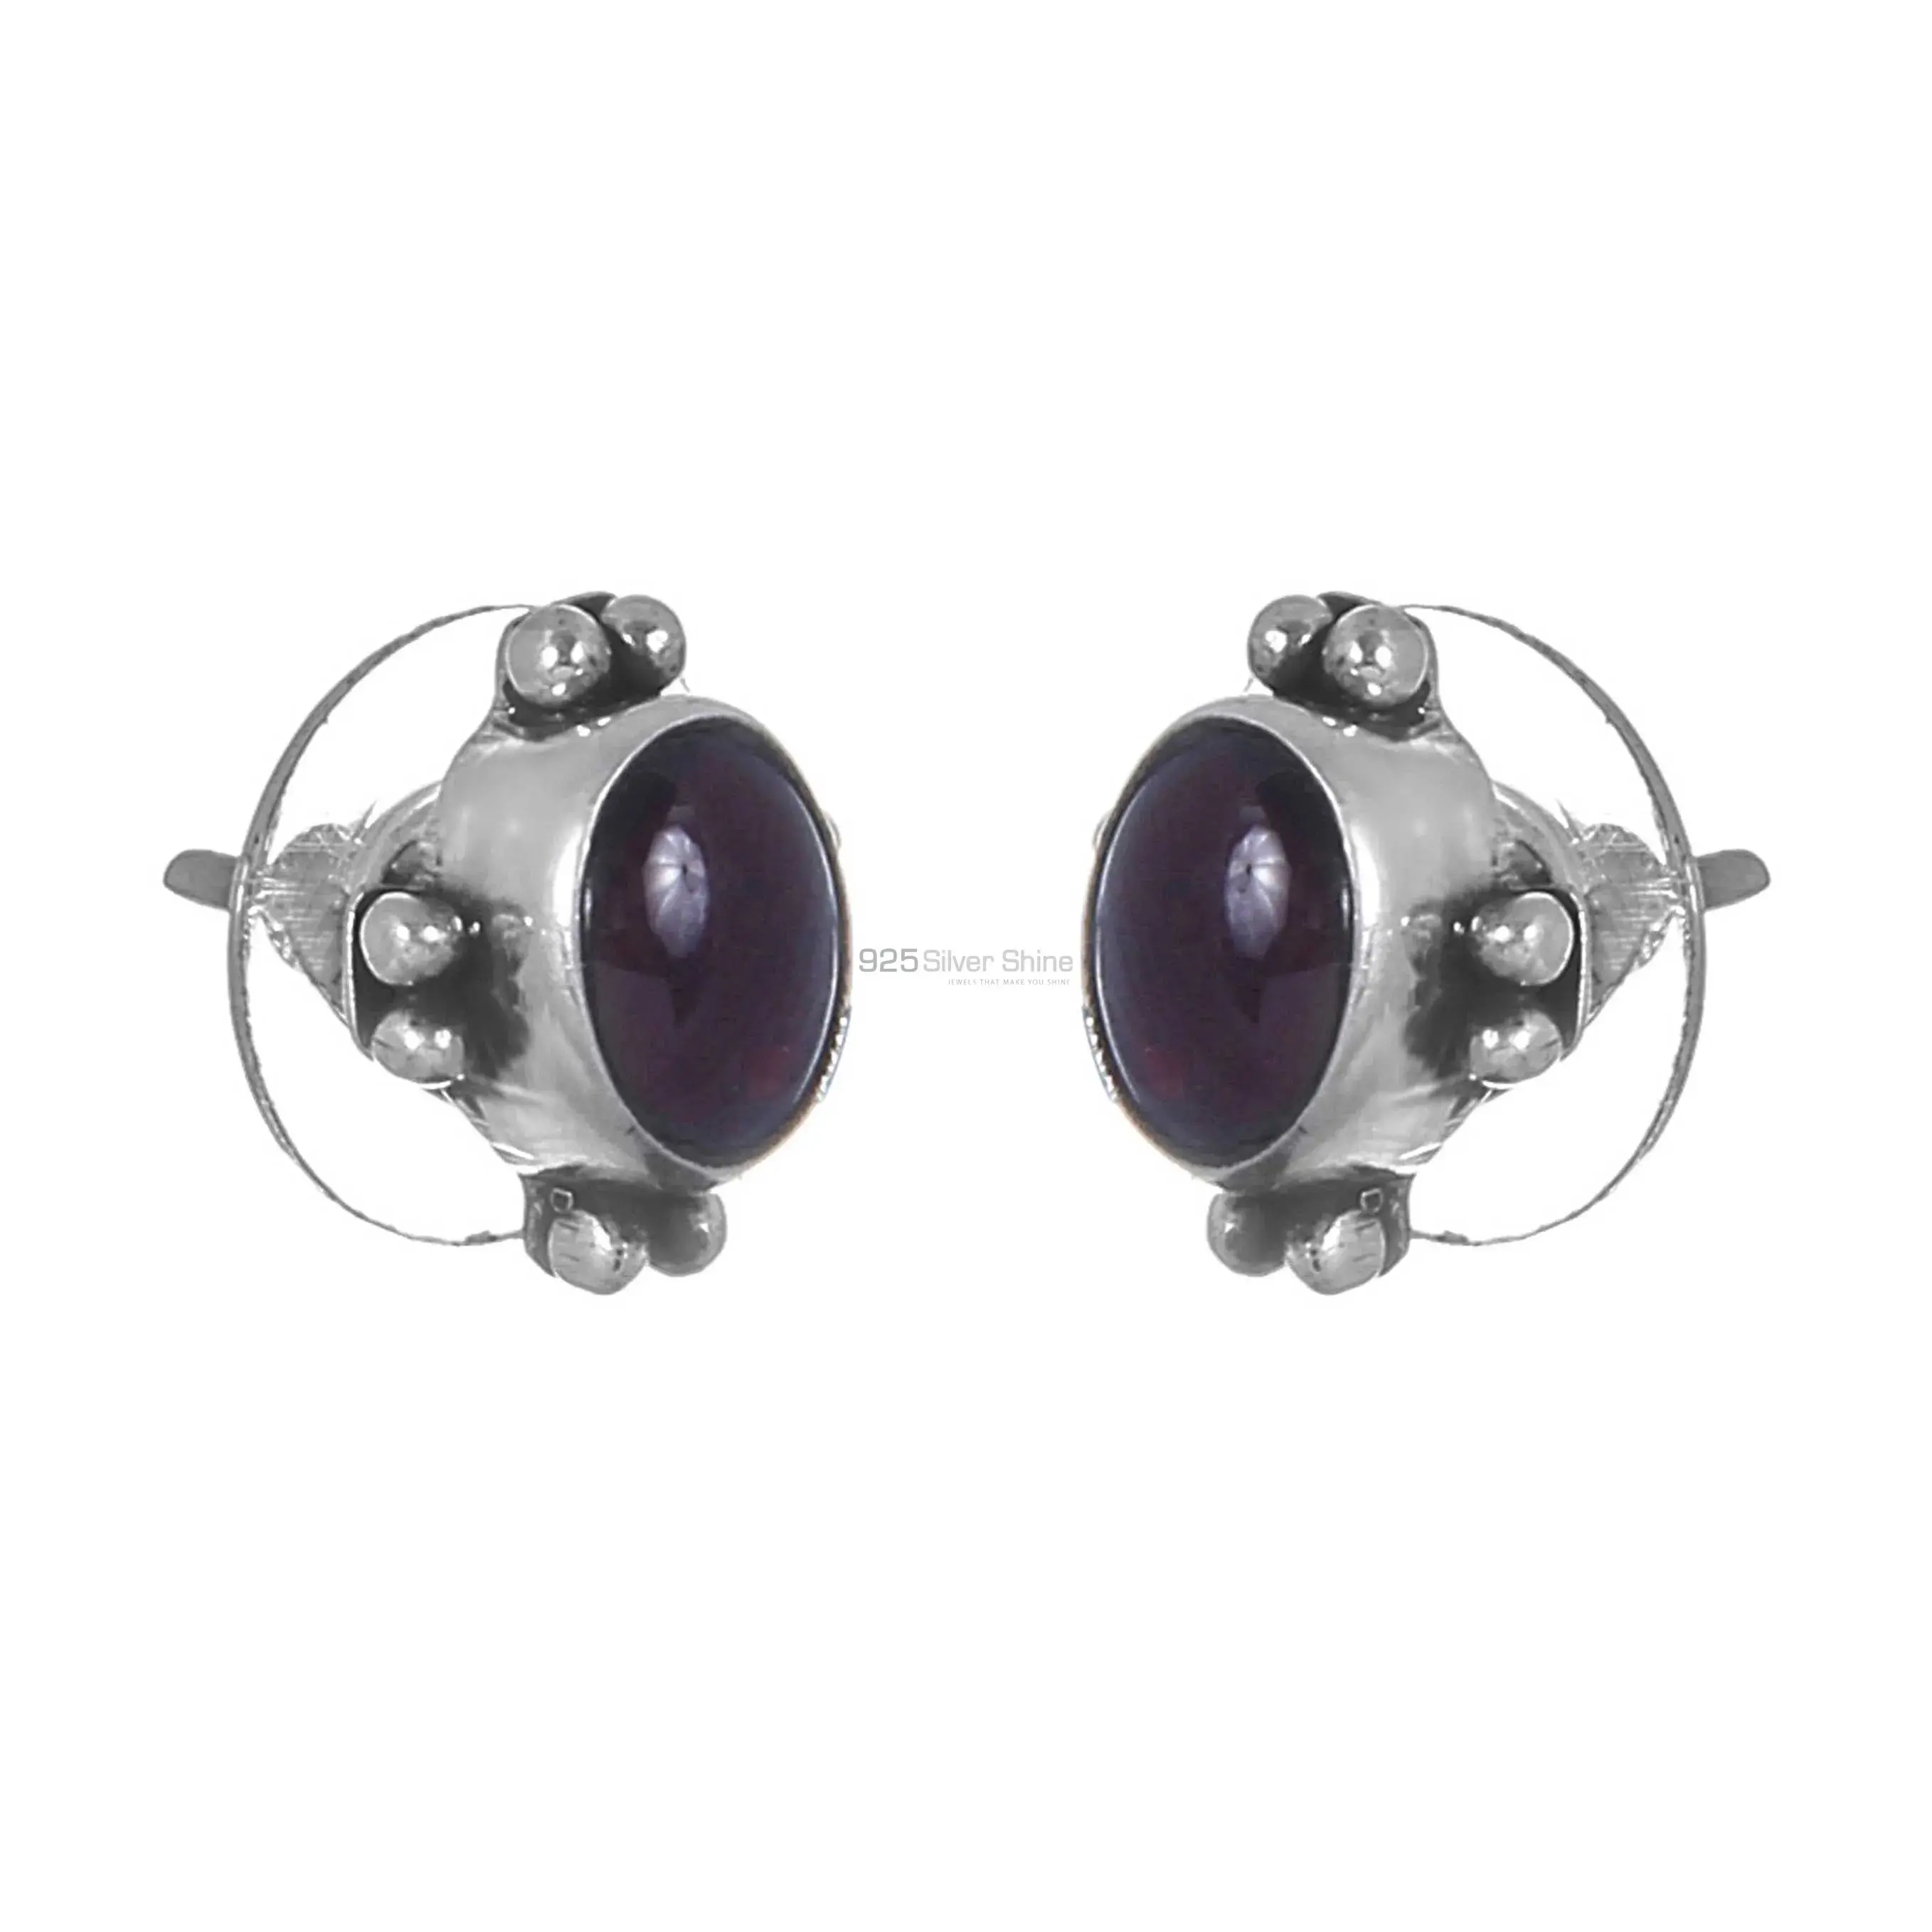 Affordable 925 Sterling Silver Earrings In Garnet Gemstone Jewelry 925SE277_0